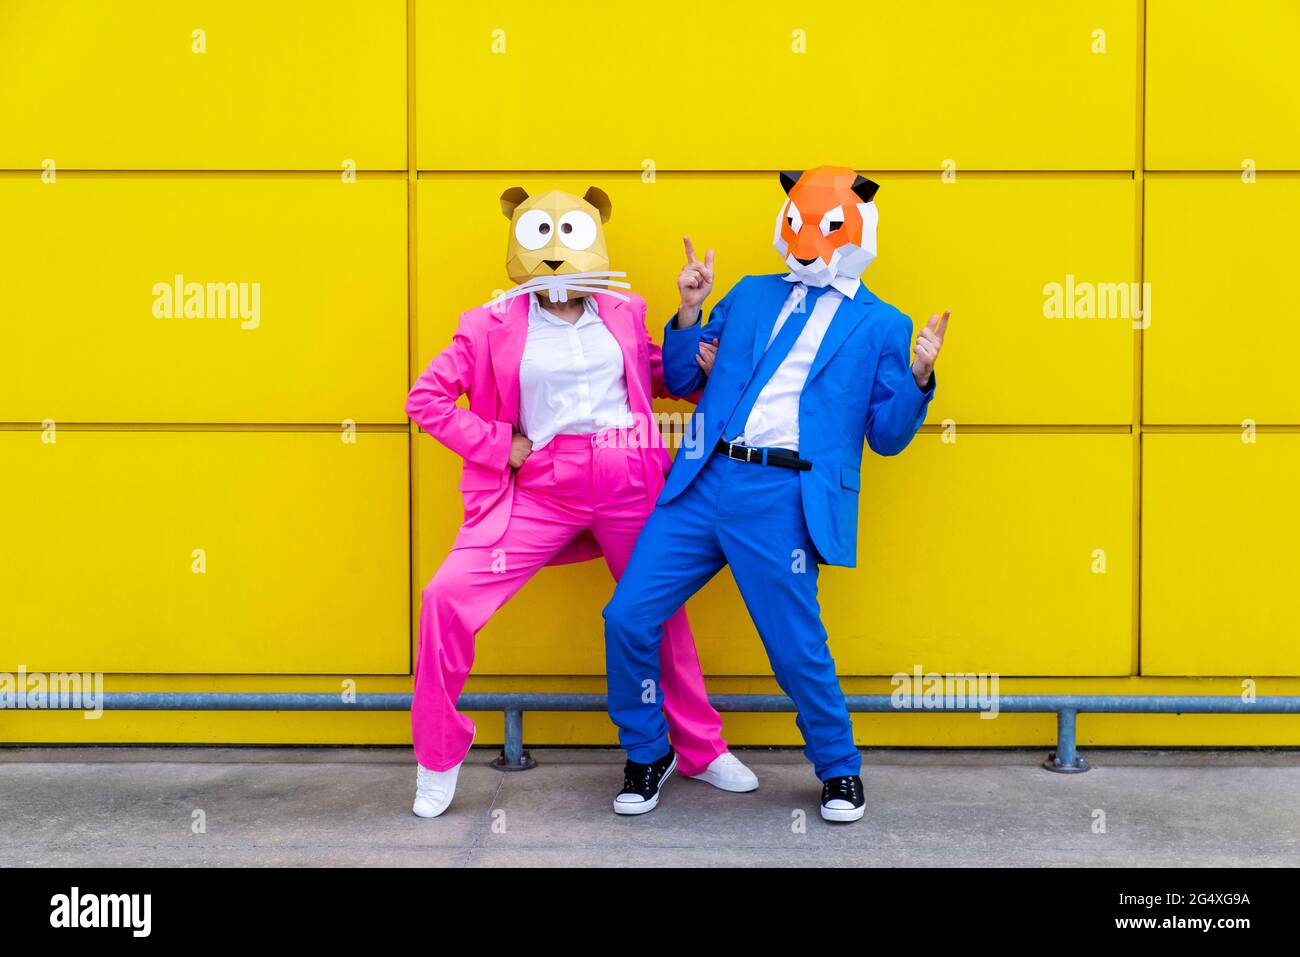 Homme et femme portant des costumes vibrants et des masques pour animaux se posant ensemble contre le mur jaune Banque D'Images